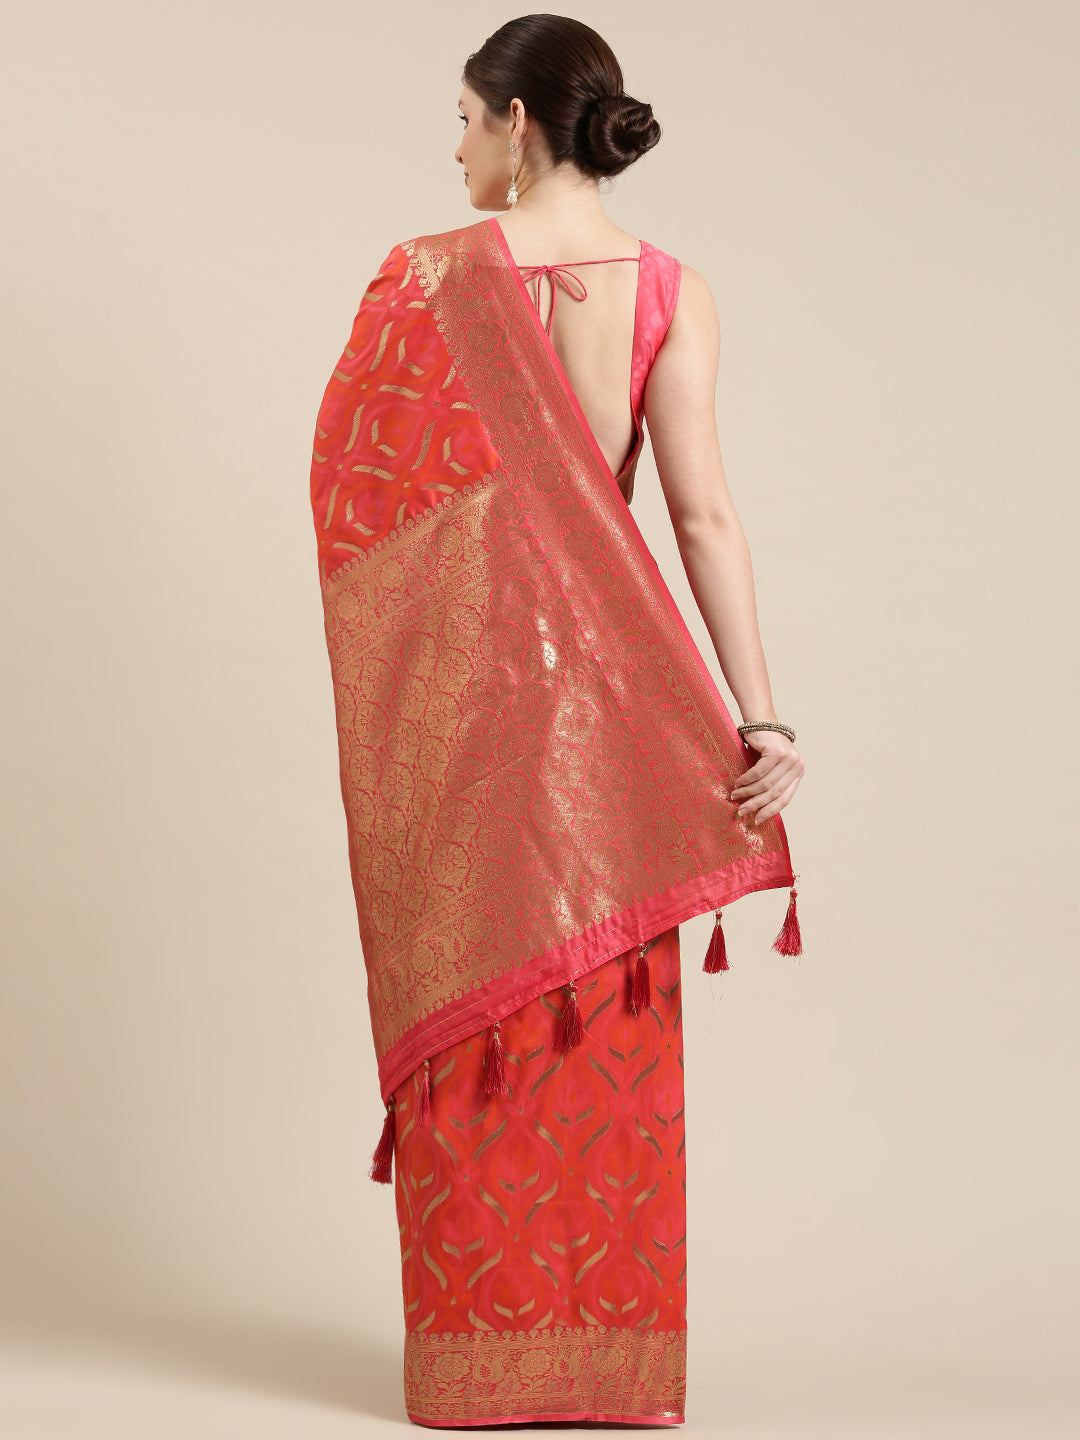 Women's Red & Golden Satin Paisley Zari Woven Banarasi Saree - Royal Dwells